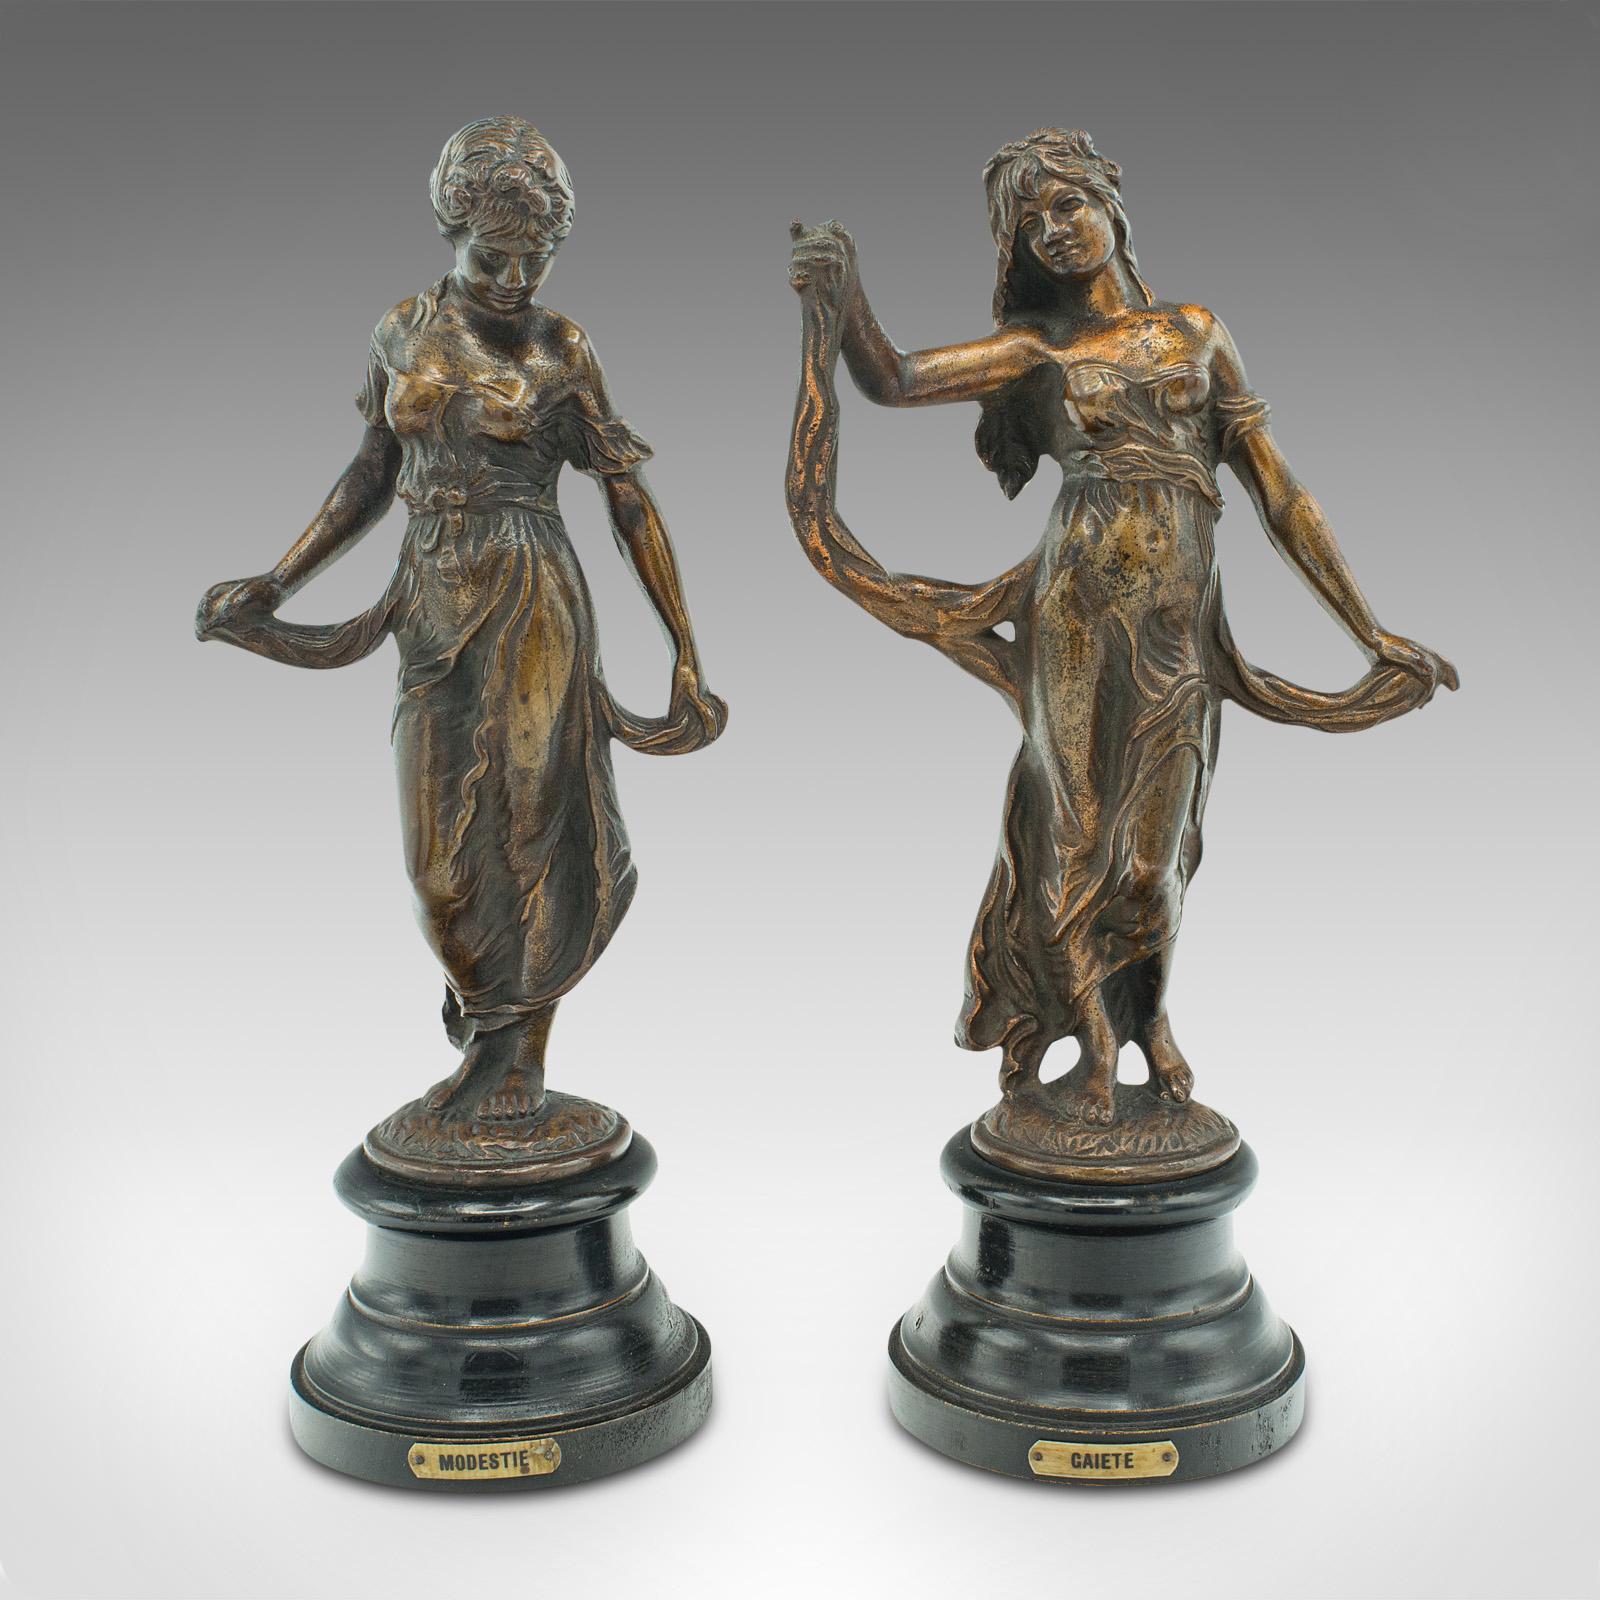 Il s'agit d'une paire de figurines de vertu antiques. Statue féminine décorative en bronze de style Art nouveau, datant de la fin de la période victorienne, vers 1890.

Délicieuse élégance et motif Art nouveau séduisant
Présentant une patine